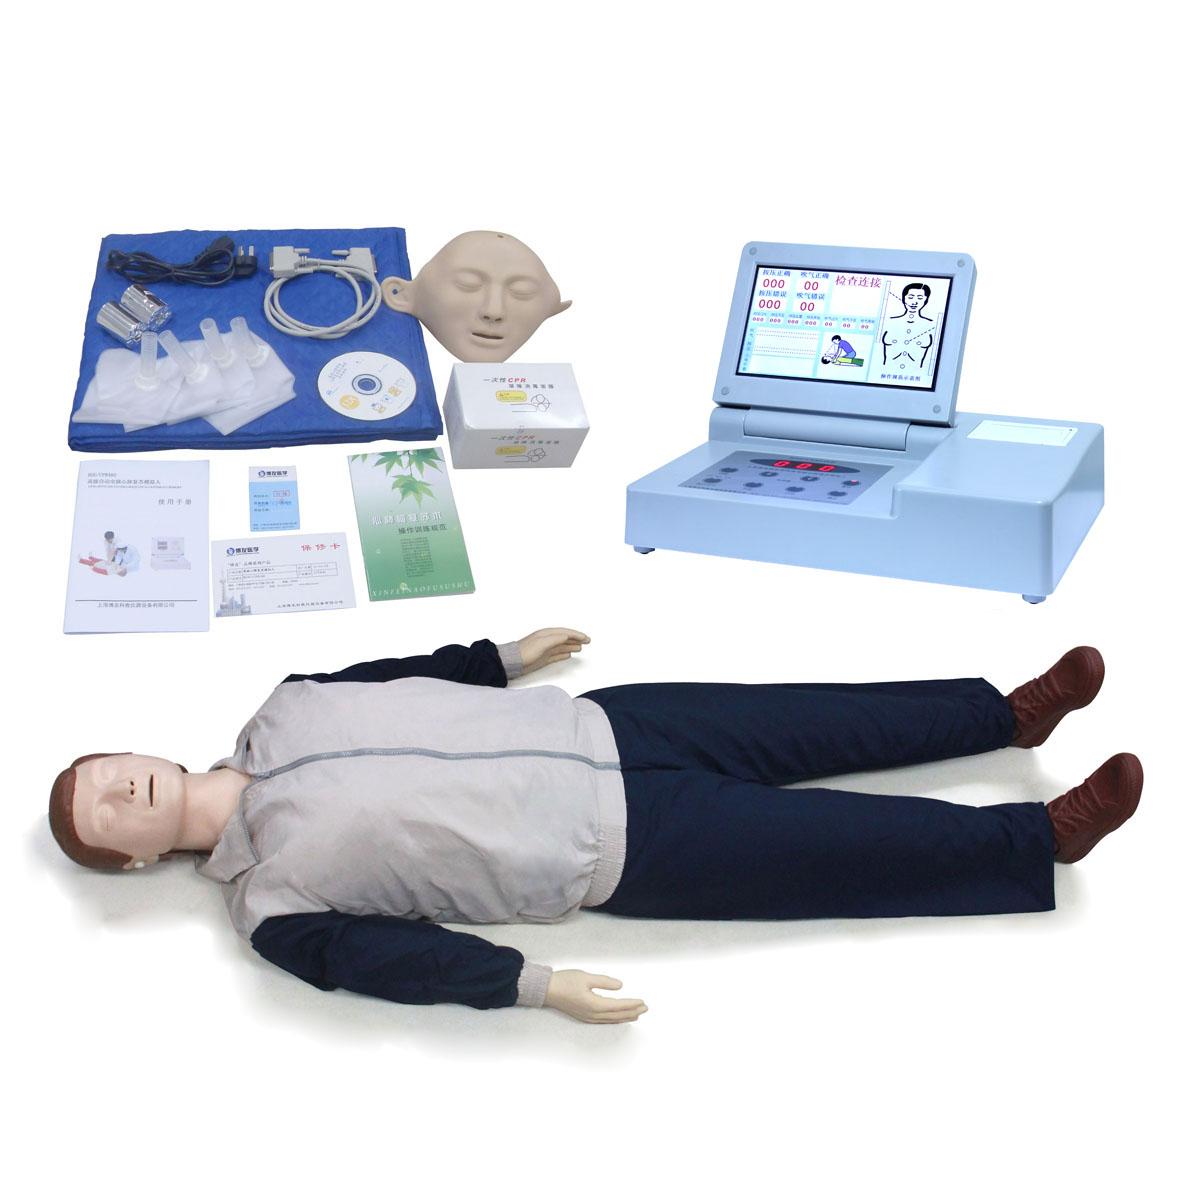 JY/CPR390高级全自动电脑心肺复苏模拟人 医学人体模型 心肺复苏模拟人 教学模型人